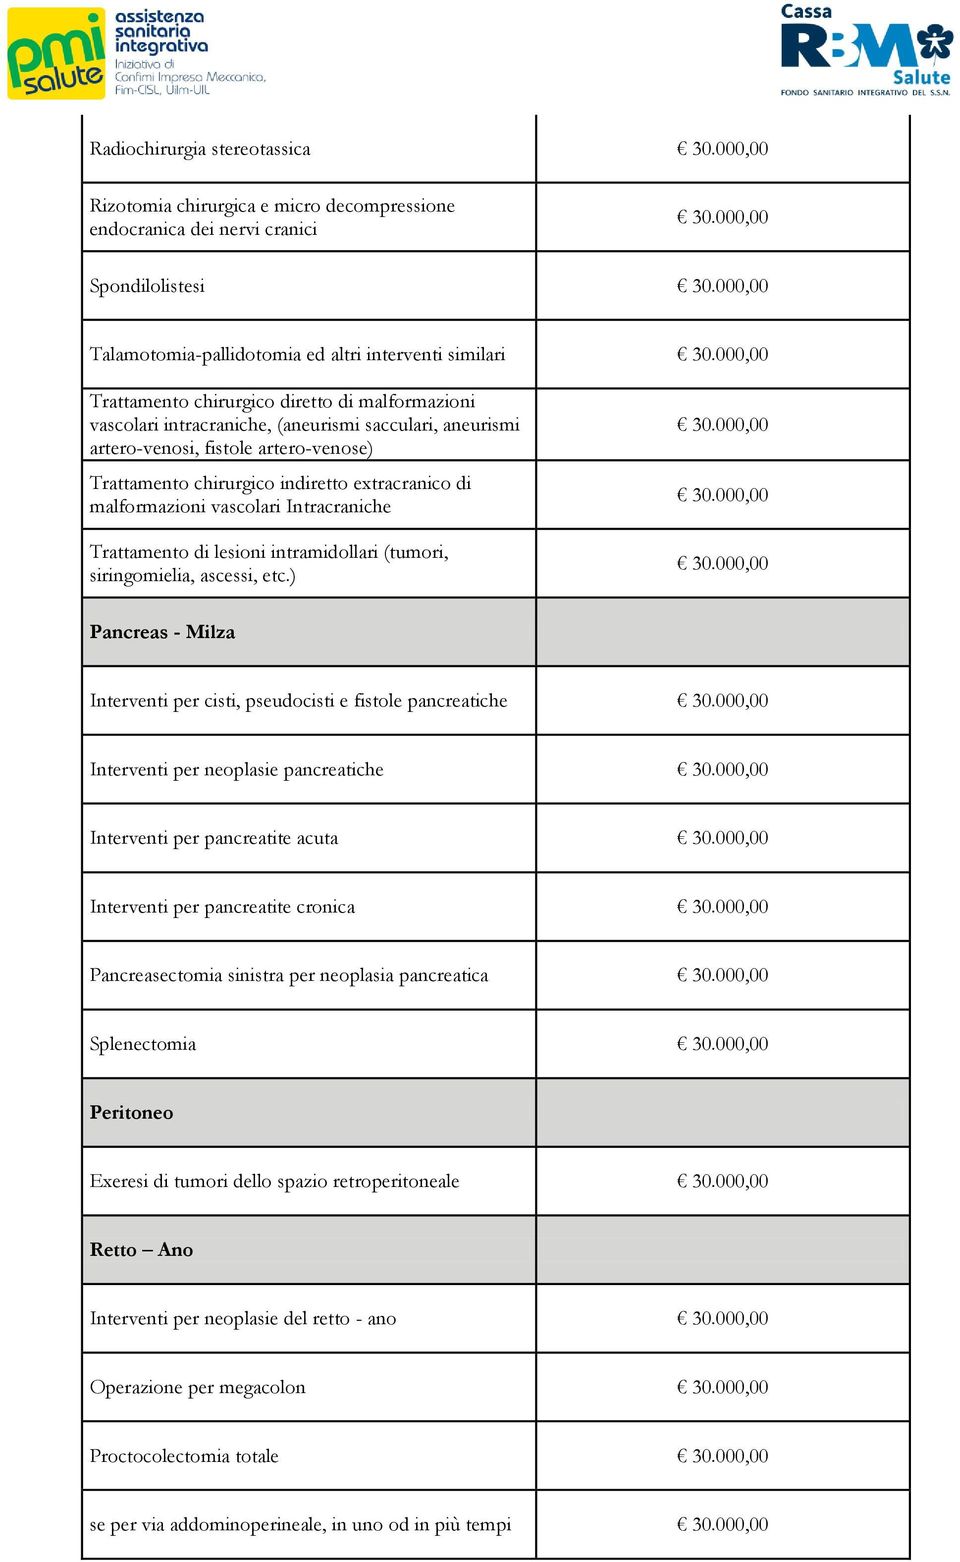 Intracraniche Trattamento di lesioni intramidollari (tumori, siringomielia, ascessi, etc.